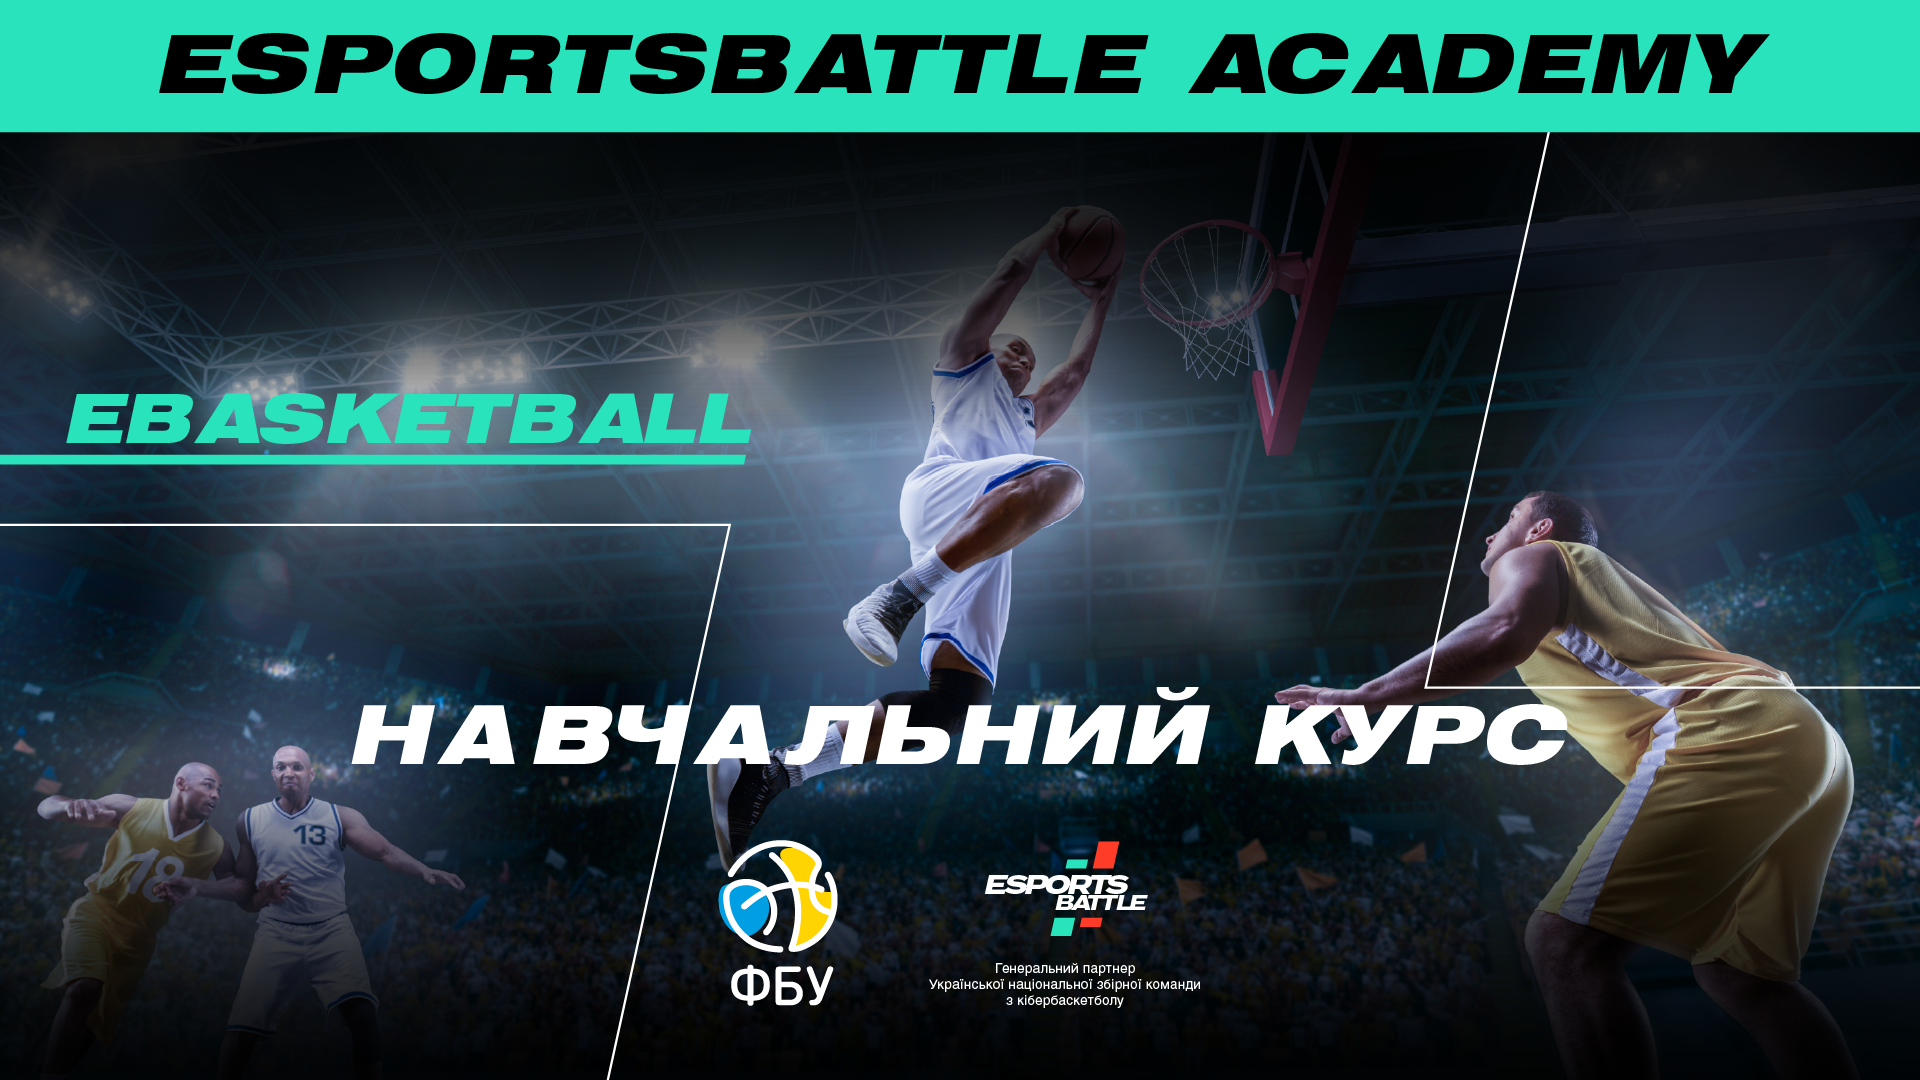 Стати кібербаскетболістом легко: в ESportsBattle Academy стартував навчальний курс з кібербаскетболу